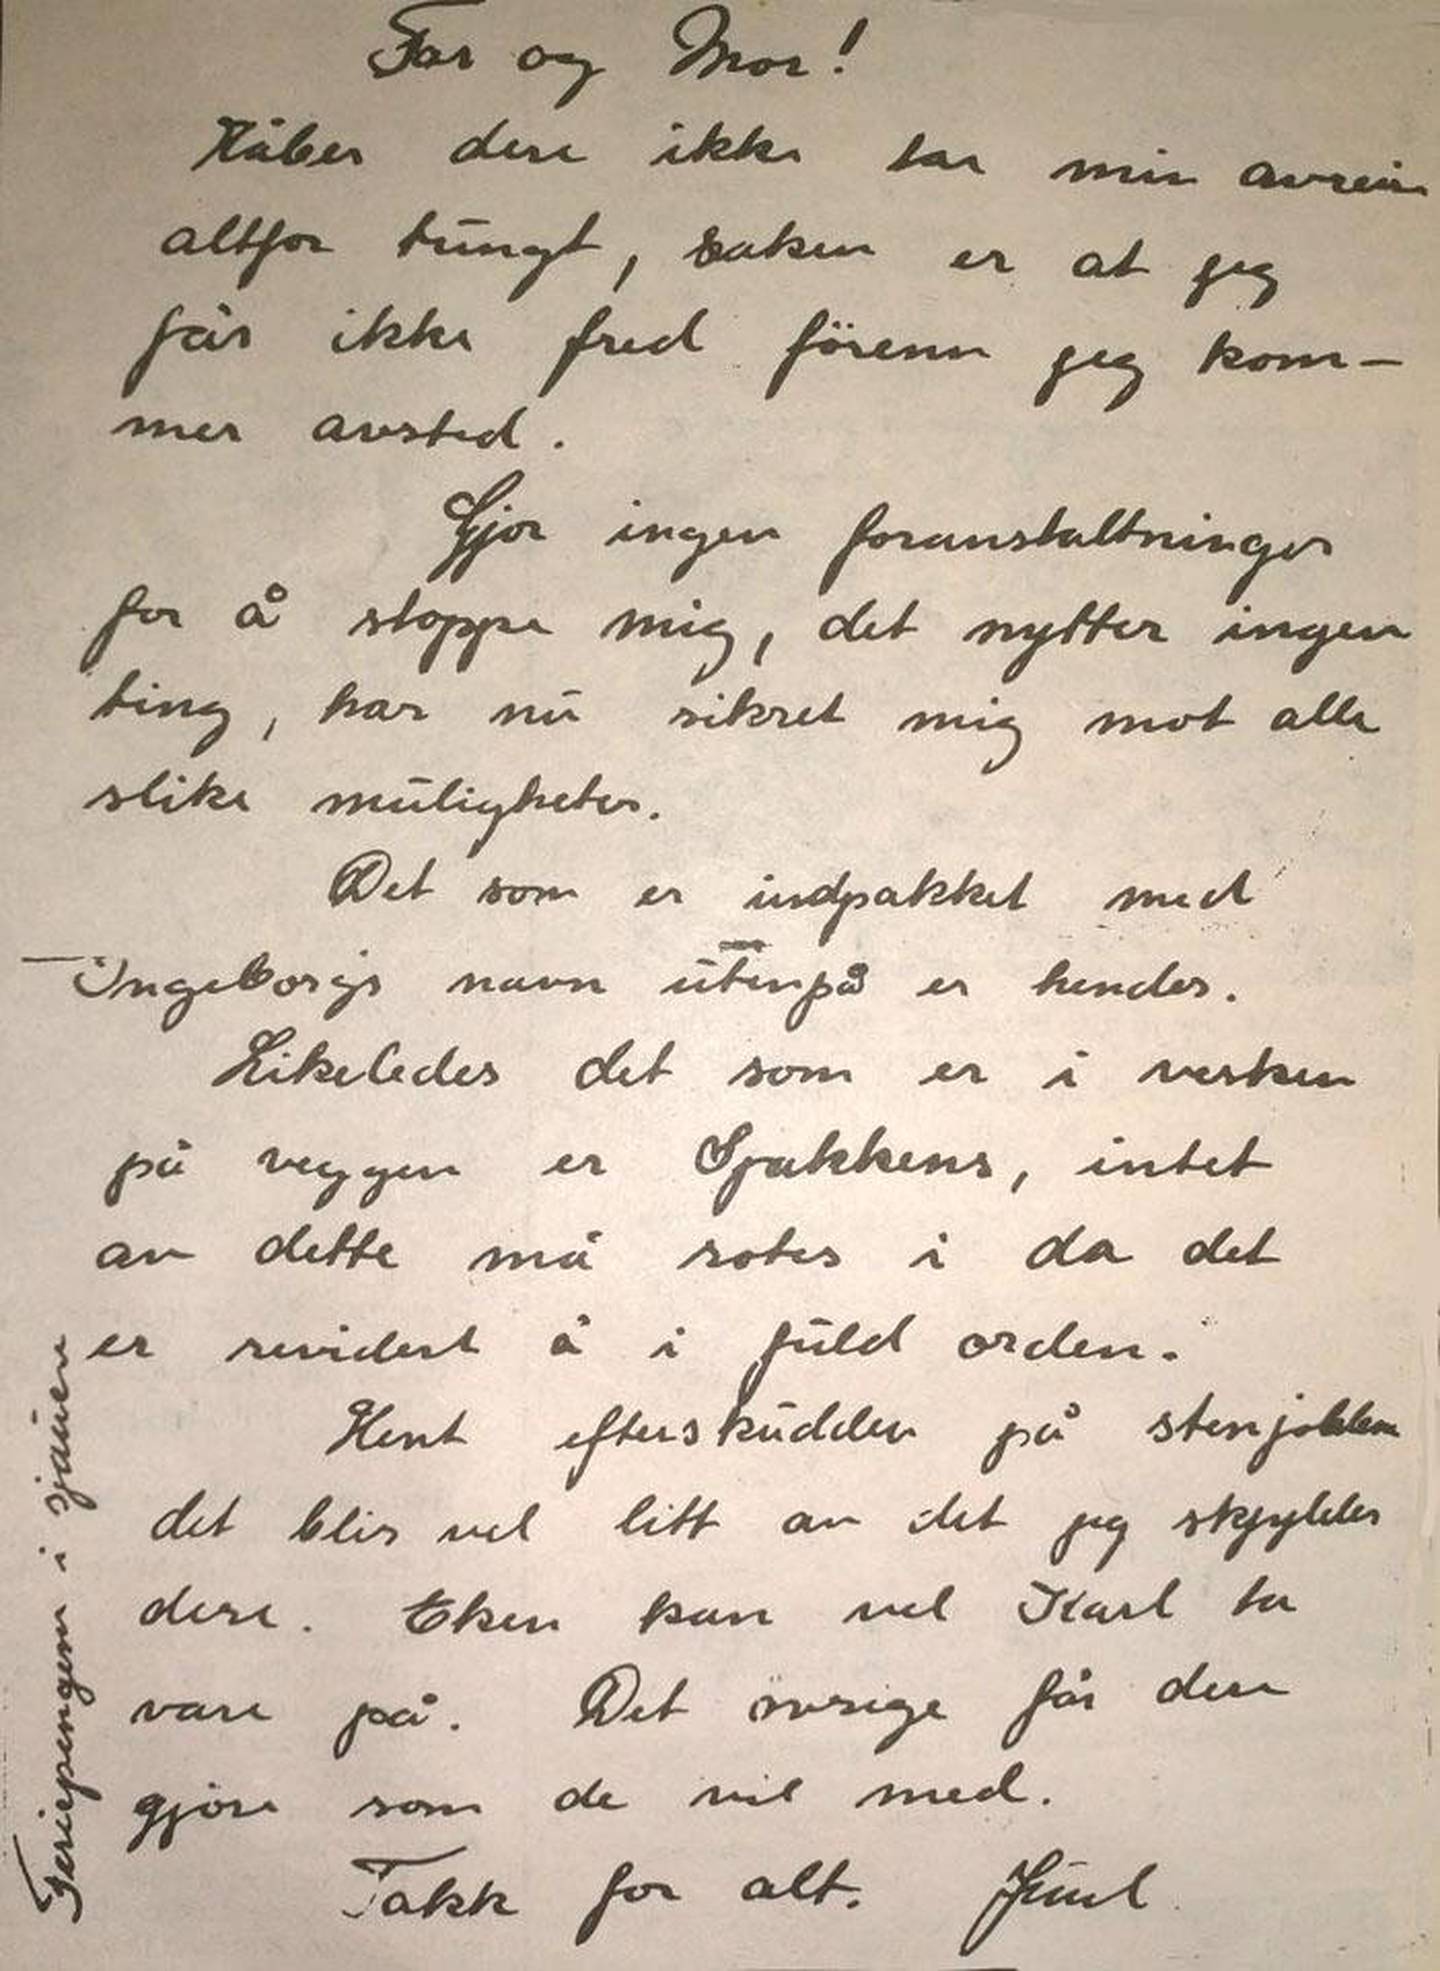 Avskjedsbrevet som Juul skrev til familien ligger nå i Arbeidernes Arkiv i Oslo, sammen med frontdagboknotatene hans.